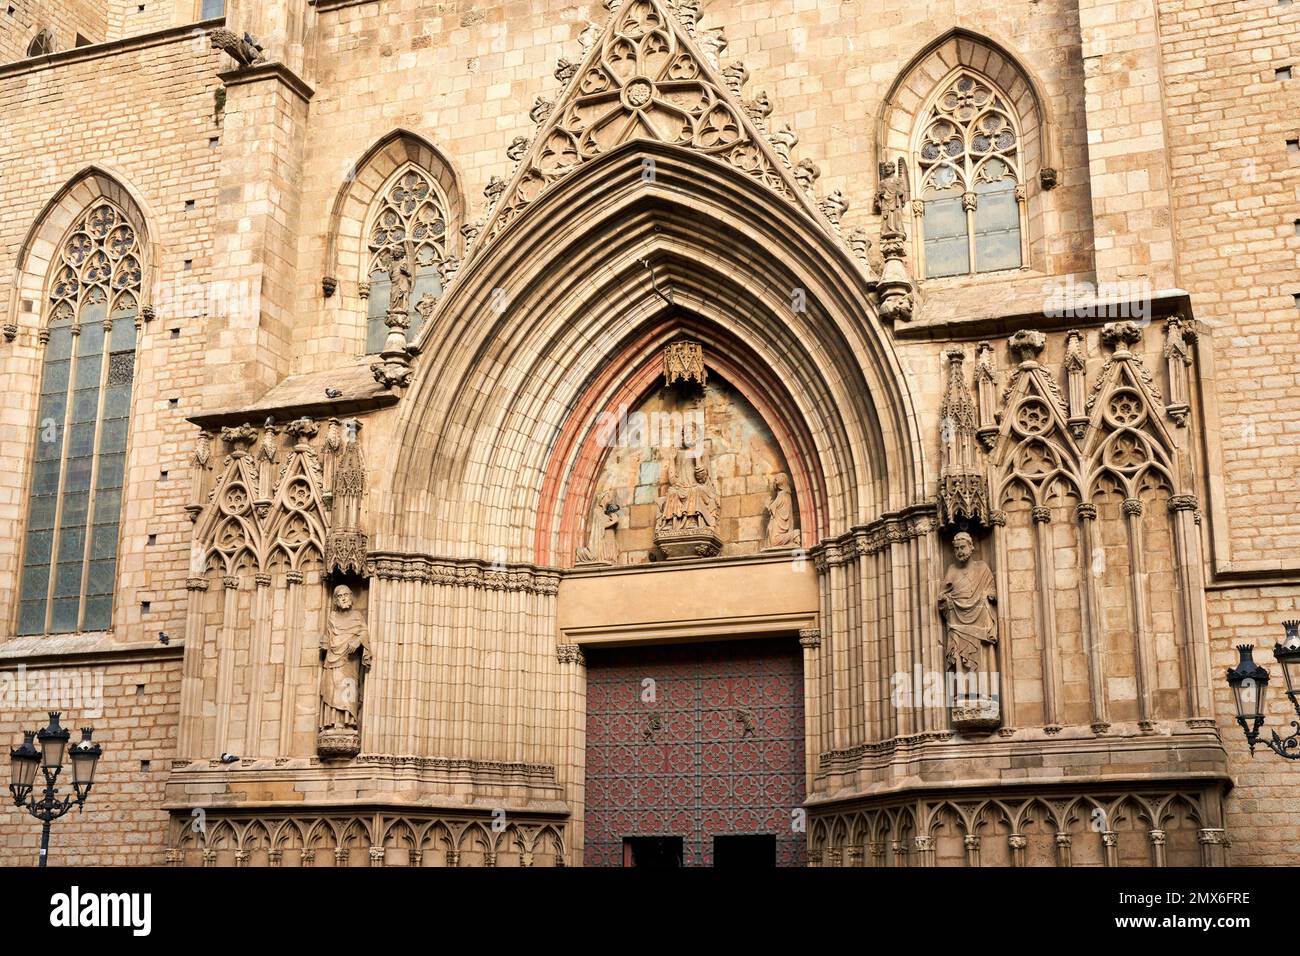 Basílica de Santa Maria del Mar, El Born, Barcelona, Cataluña, España. La Basílica de Santa María del Mar es una iglesia de estilo gótico en el Born Foto de stock